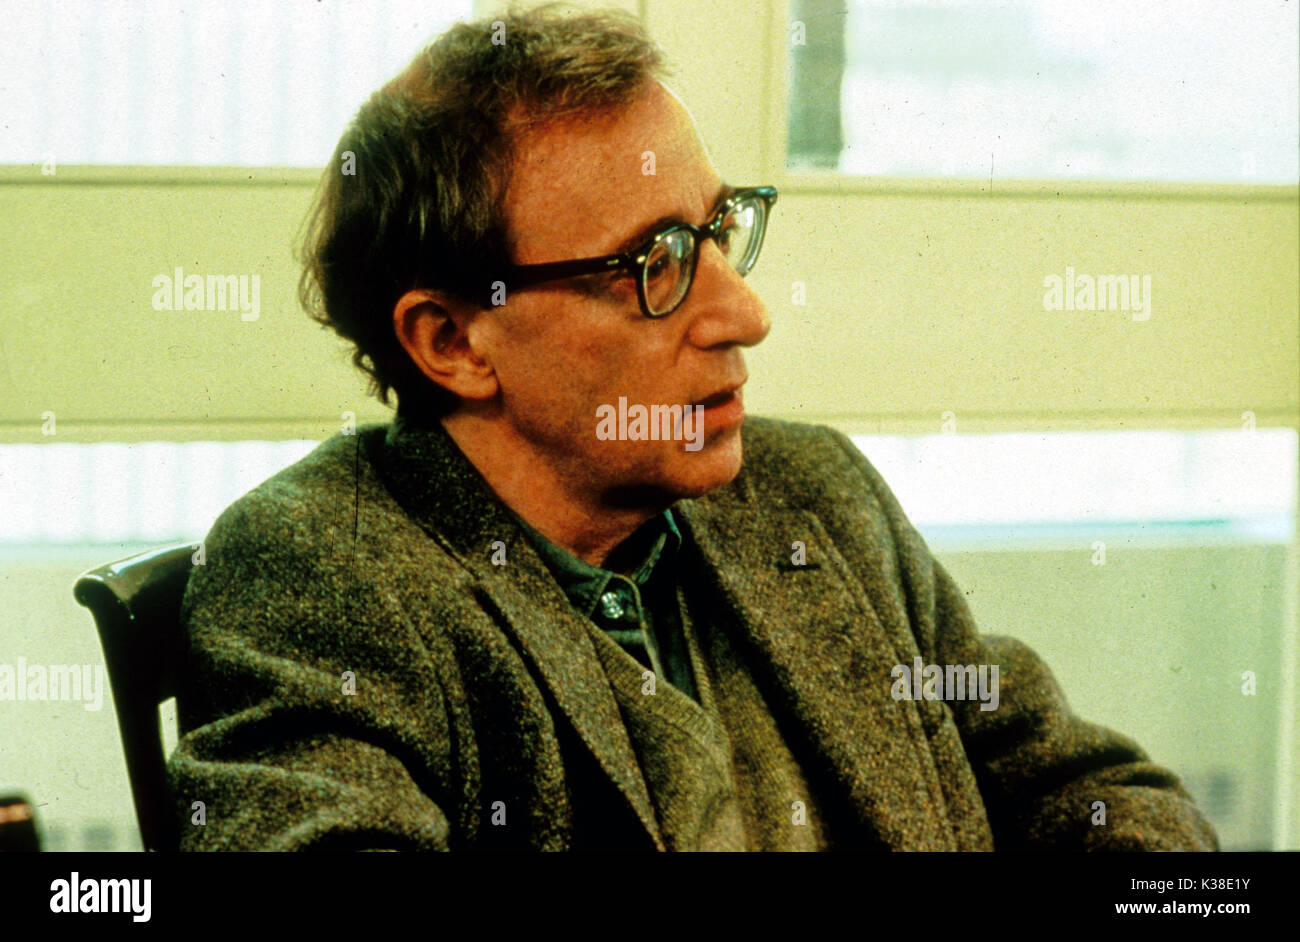 Maridos Y MUJERES Woody Allen imagen desde el Ronald Grant Archive maridos y mujeres Woody Allen Fecha: 1992 Foto de stock